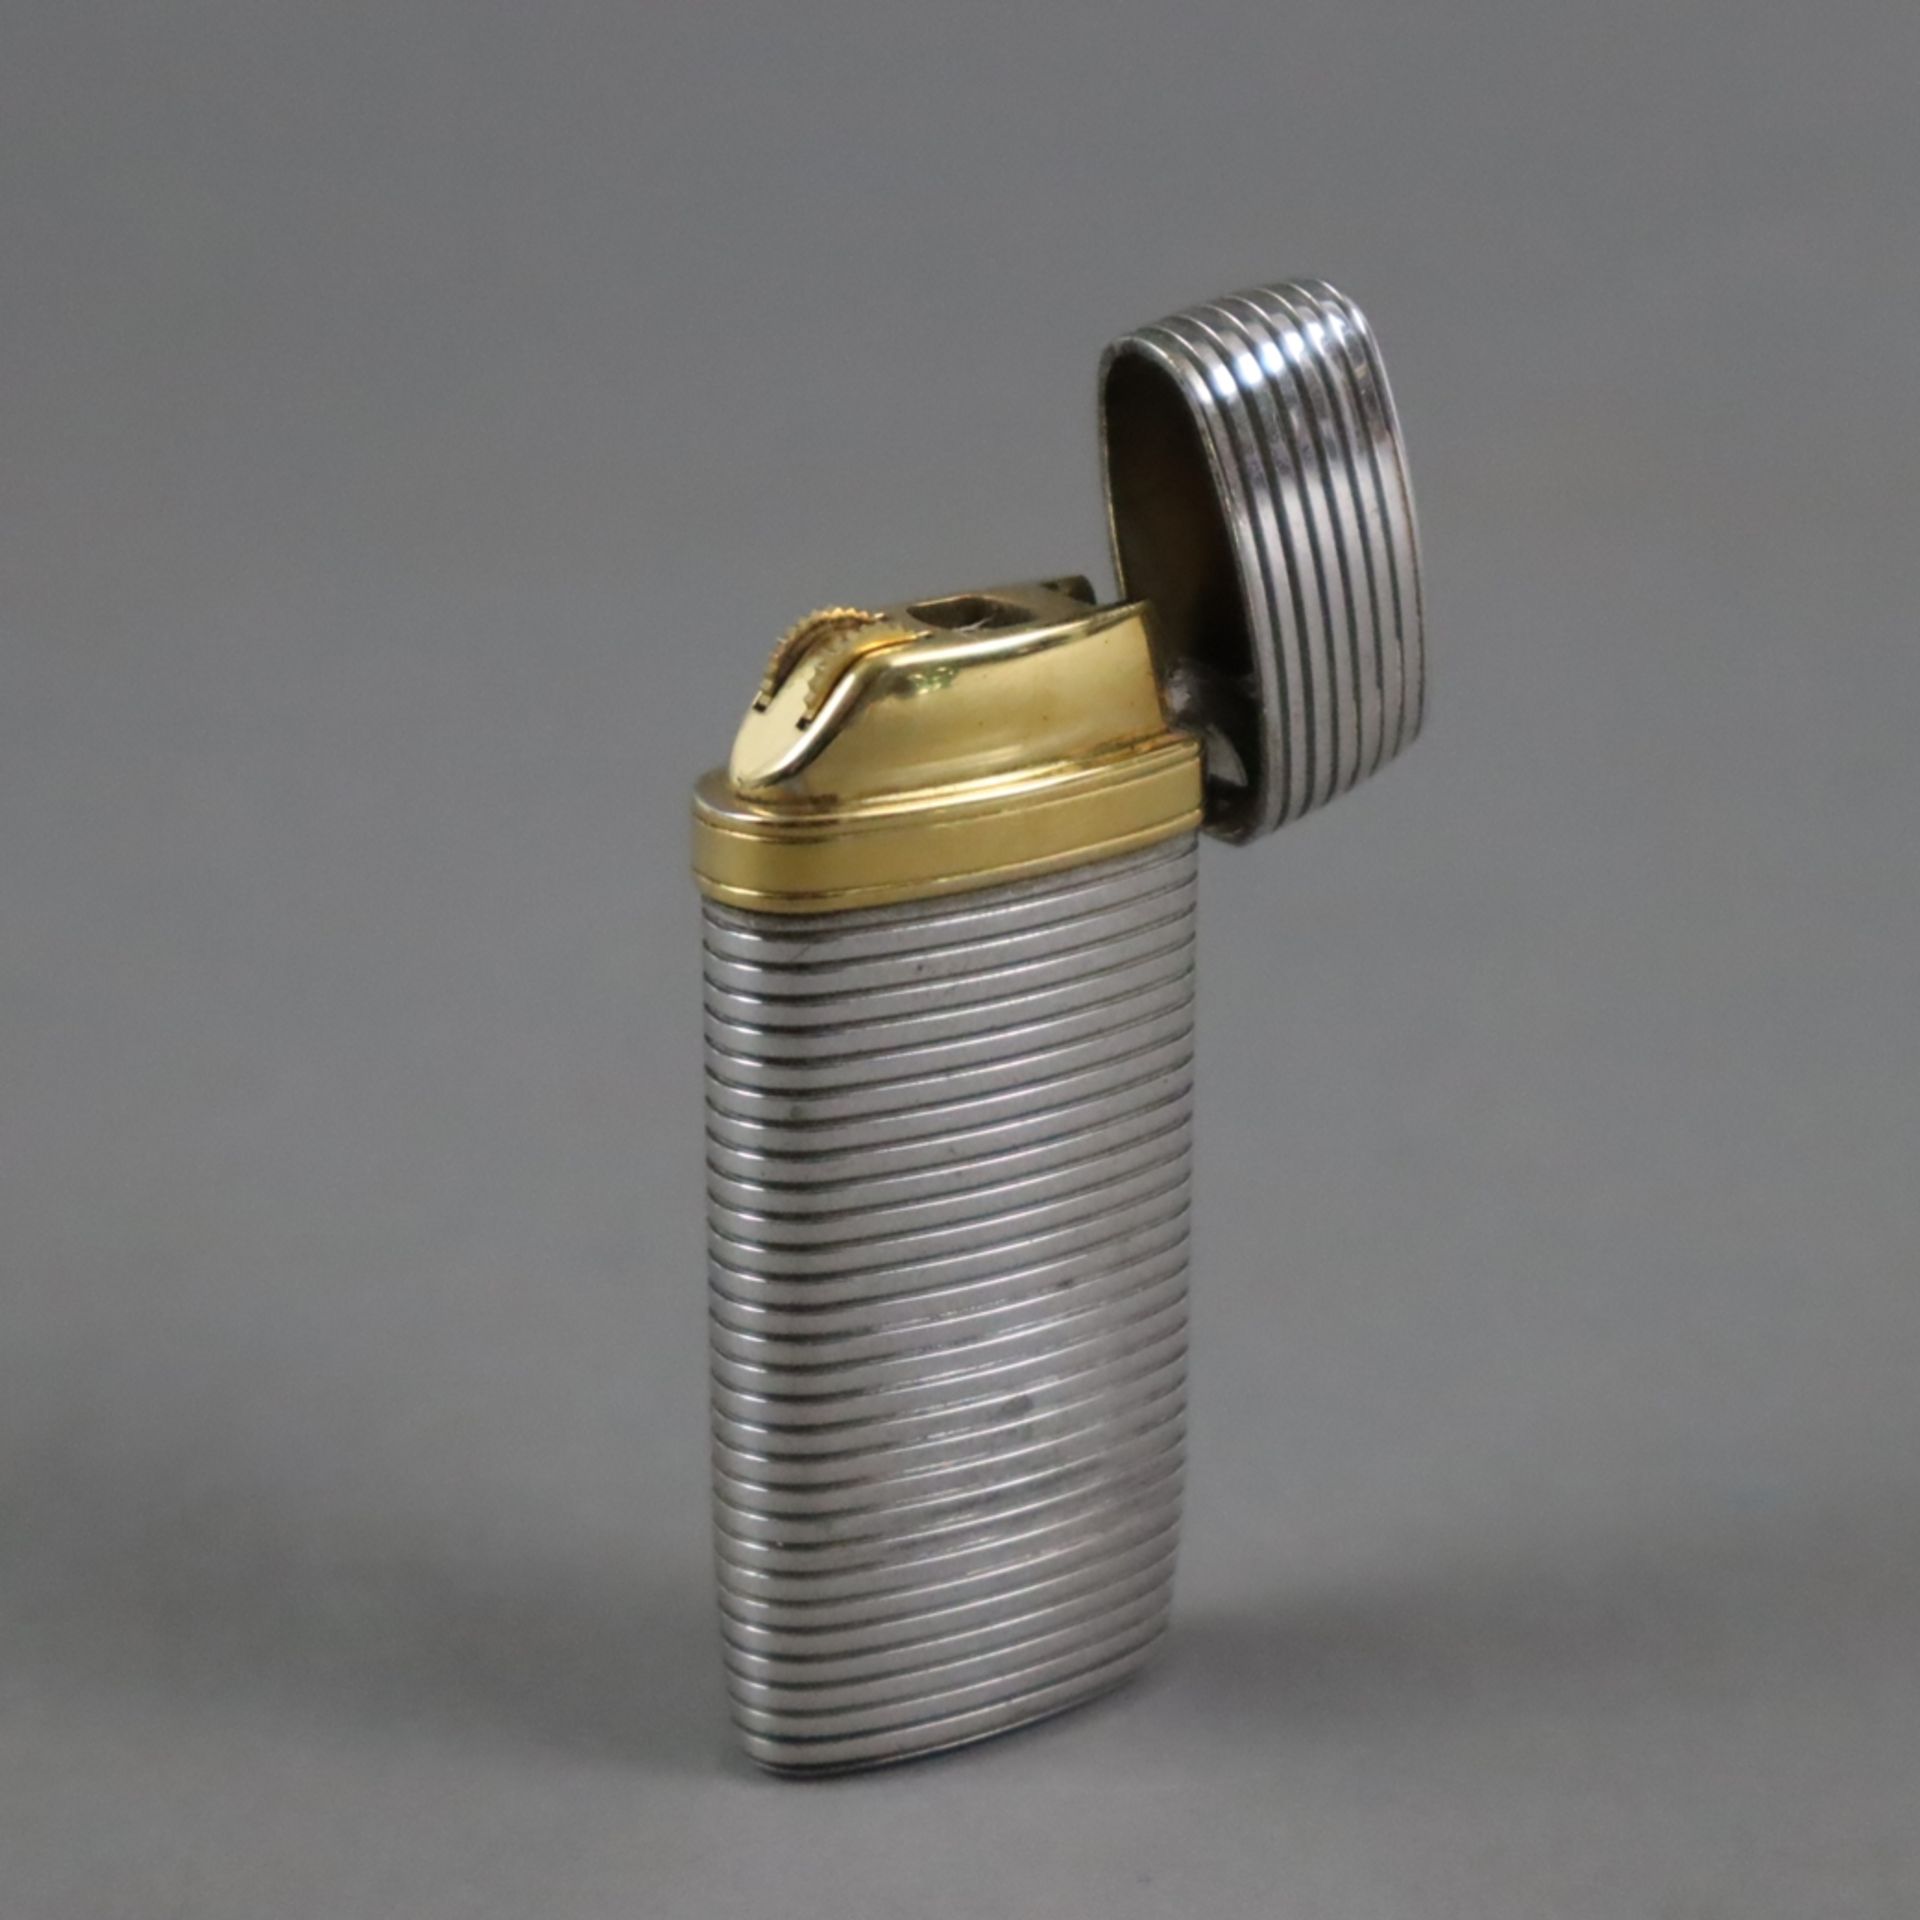 Feuerzeug - Yves Saint Laurent, gerilltes Metallgehäuse mit goldfarbenem Logodetail, Deckel innen g - Bild 2 aus 4